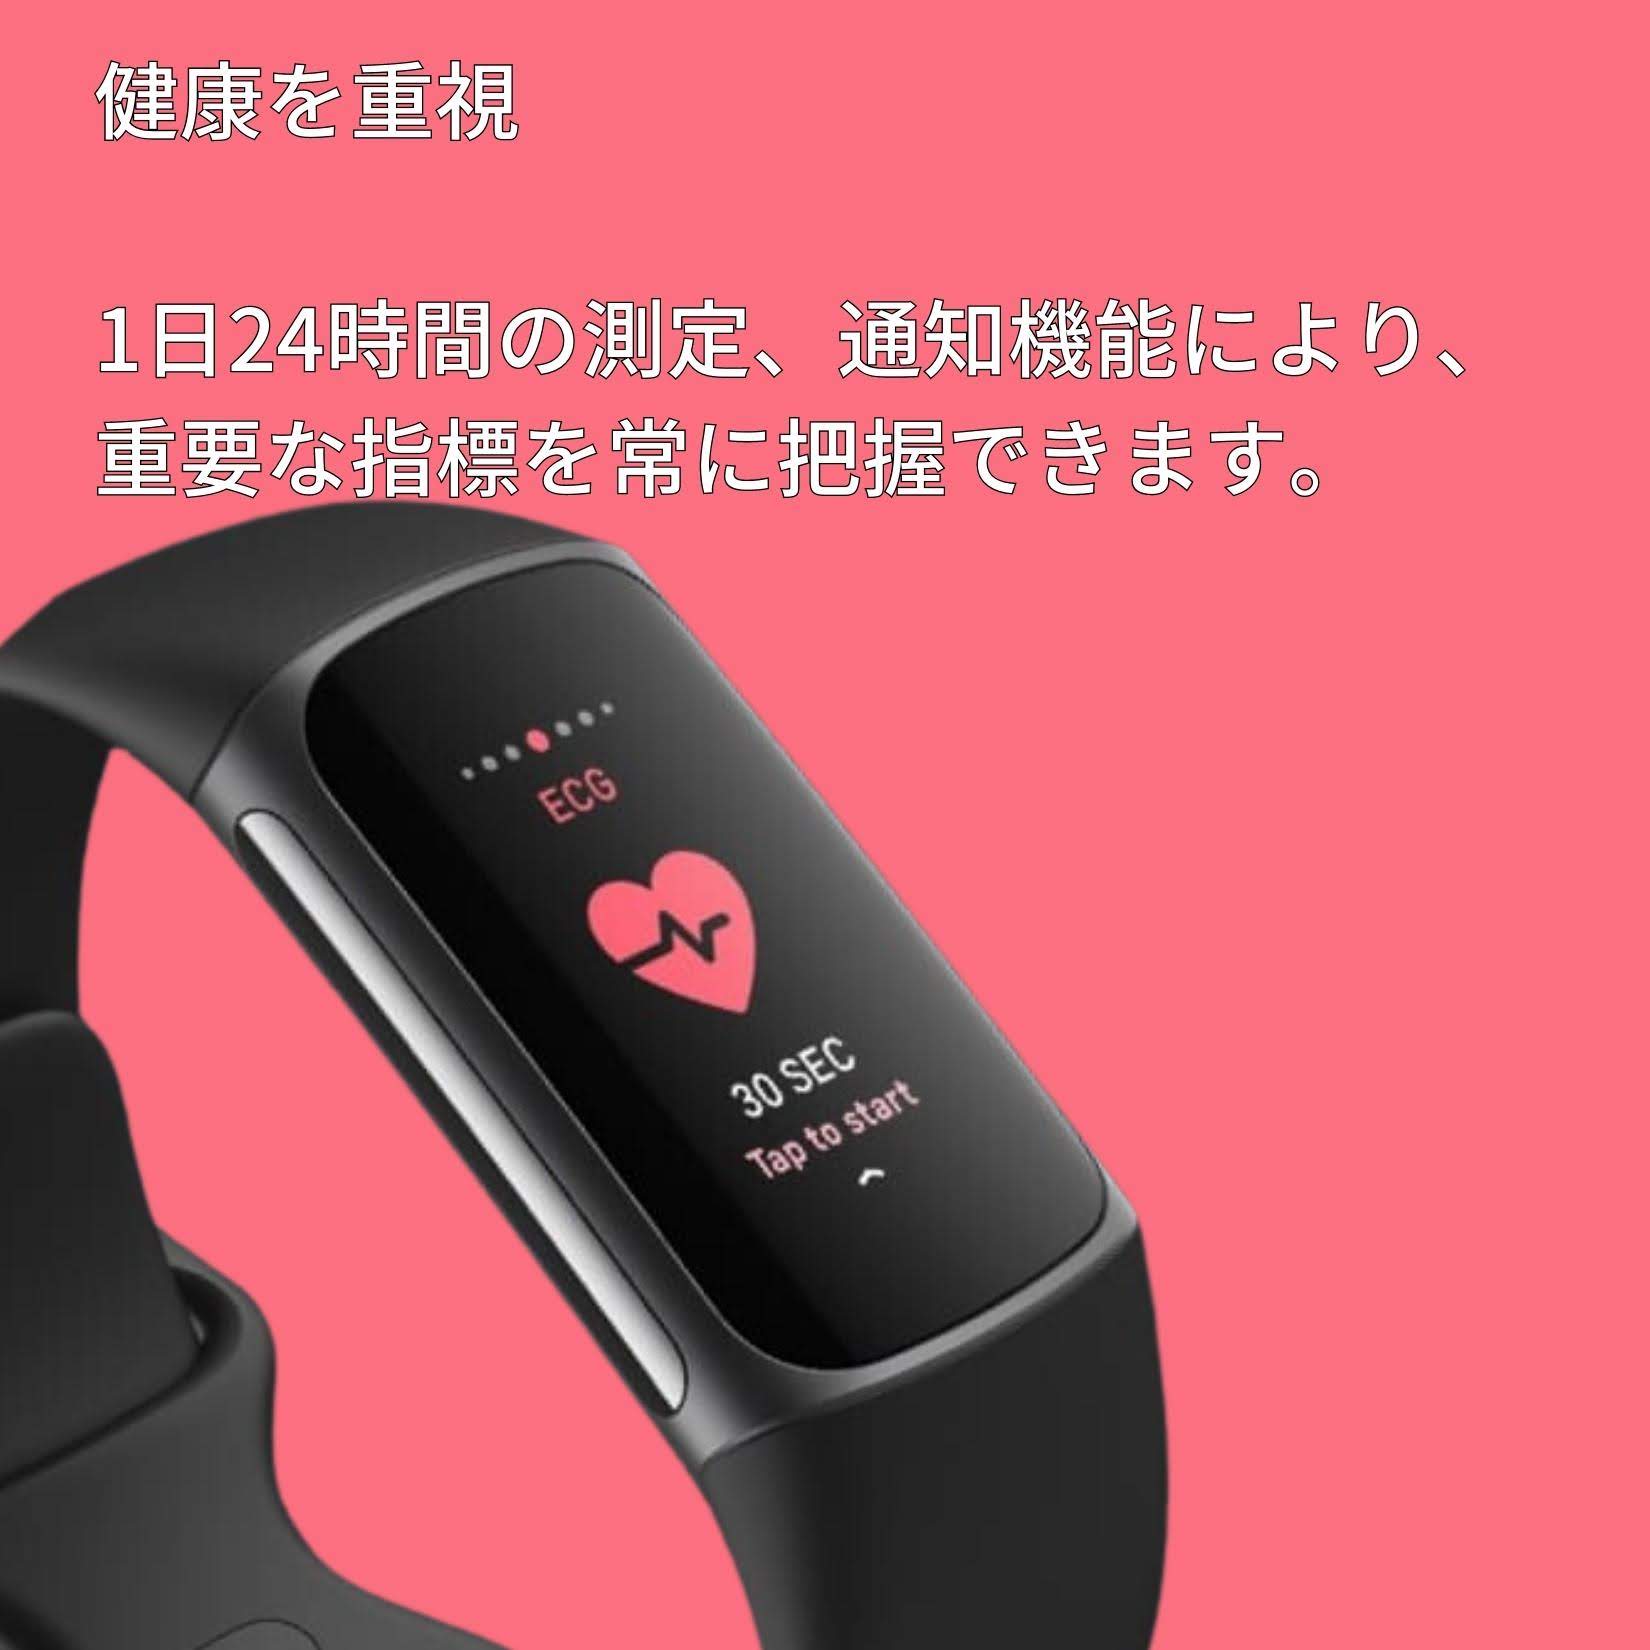 【新生活】fitbit charge 5 健康管理トラッカー GPS搭載 着けて寝て記録 睡眠の記録 スマートフォン通知表示 Suica対応  AndroidとiOS対応